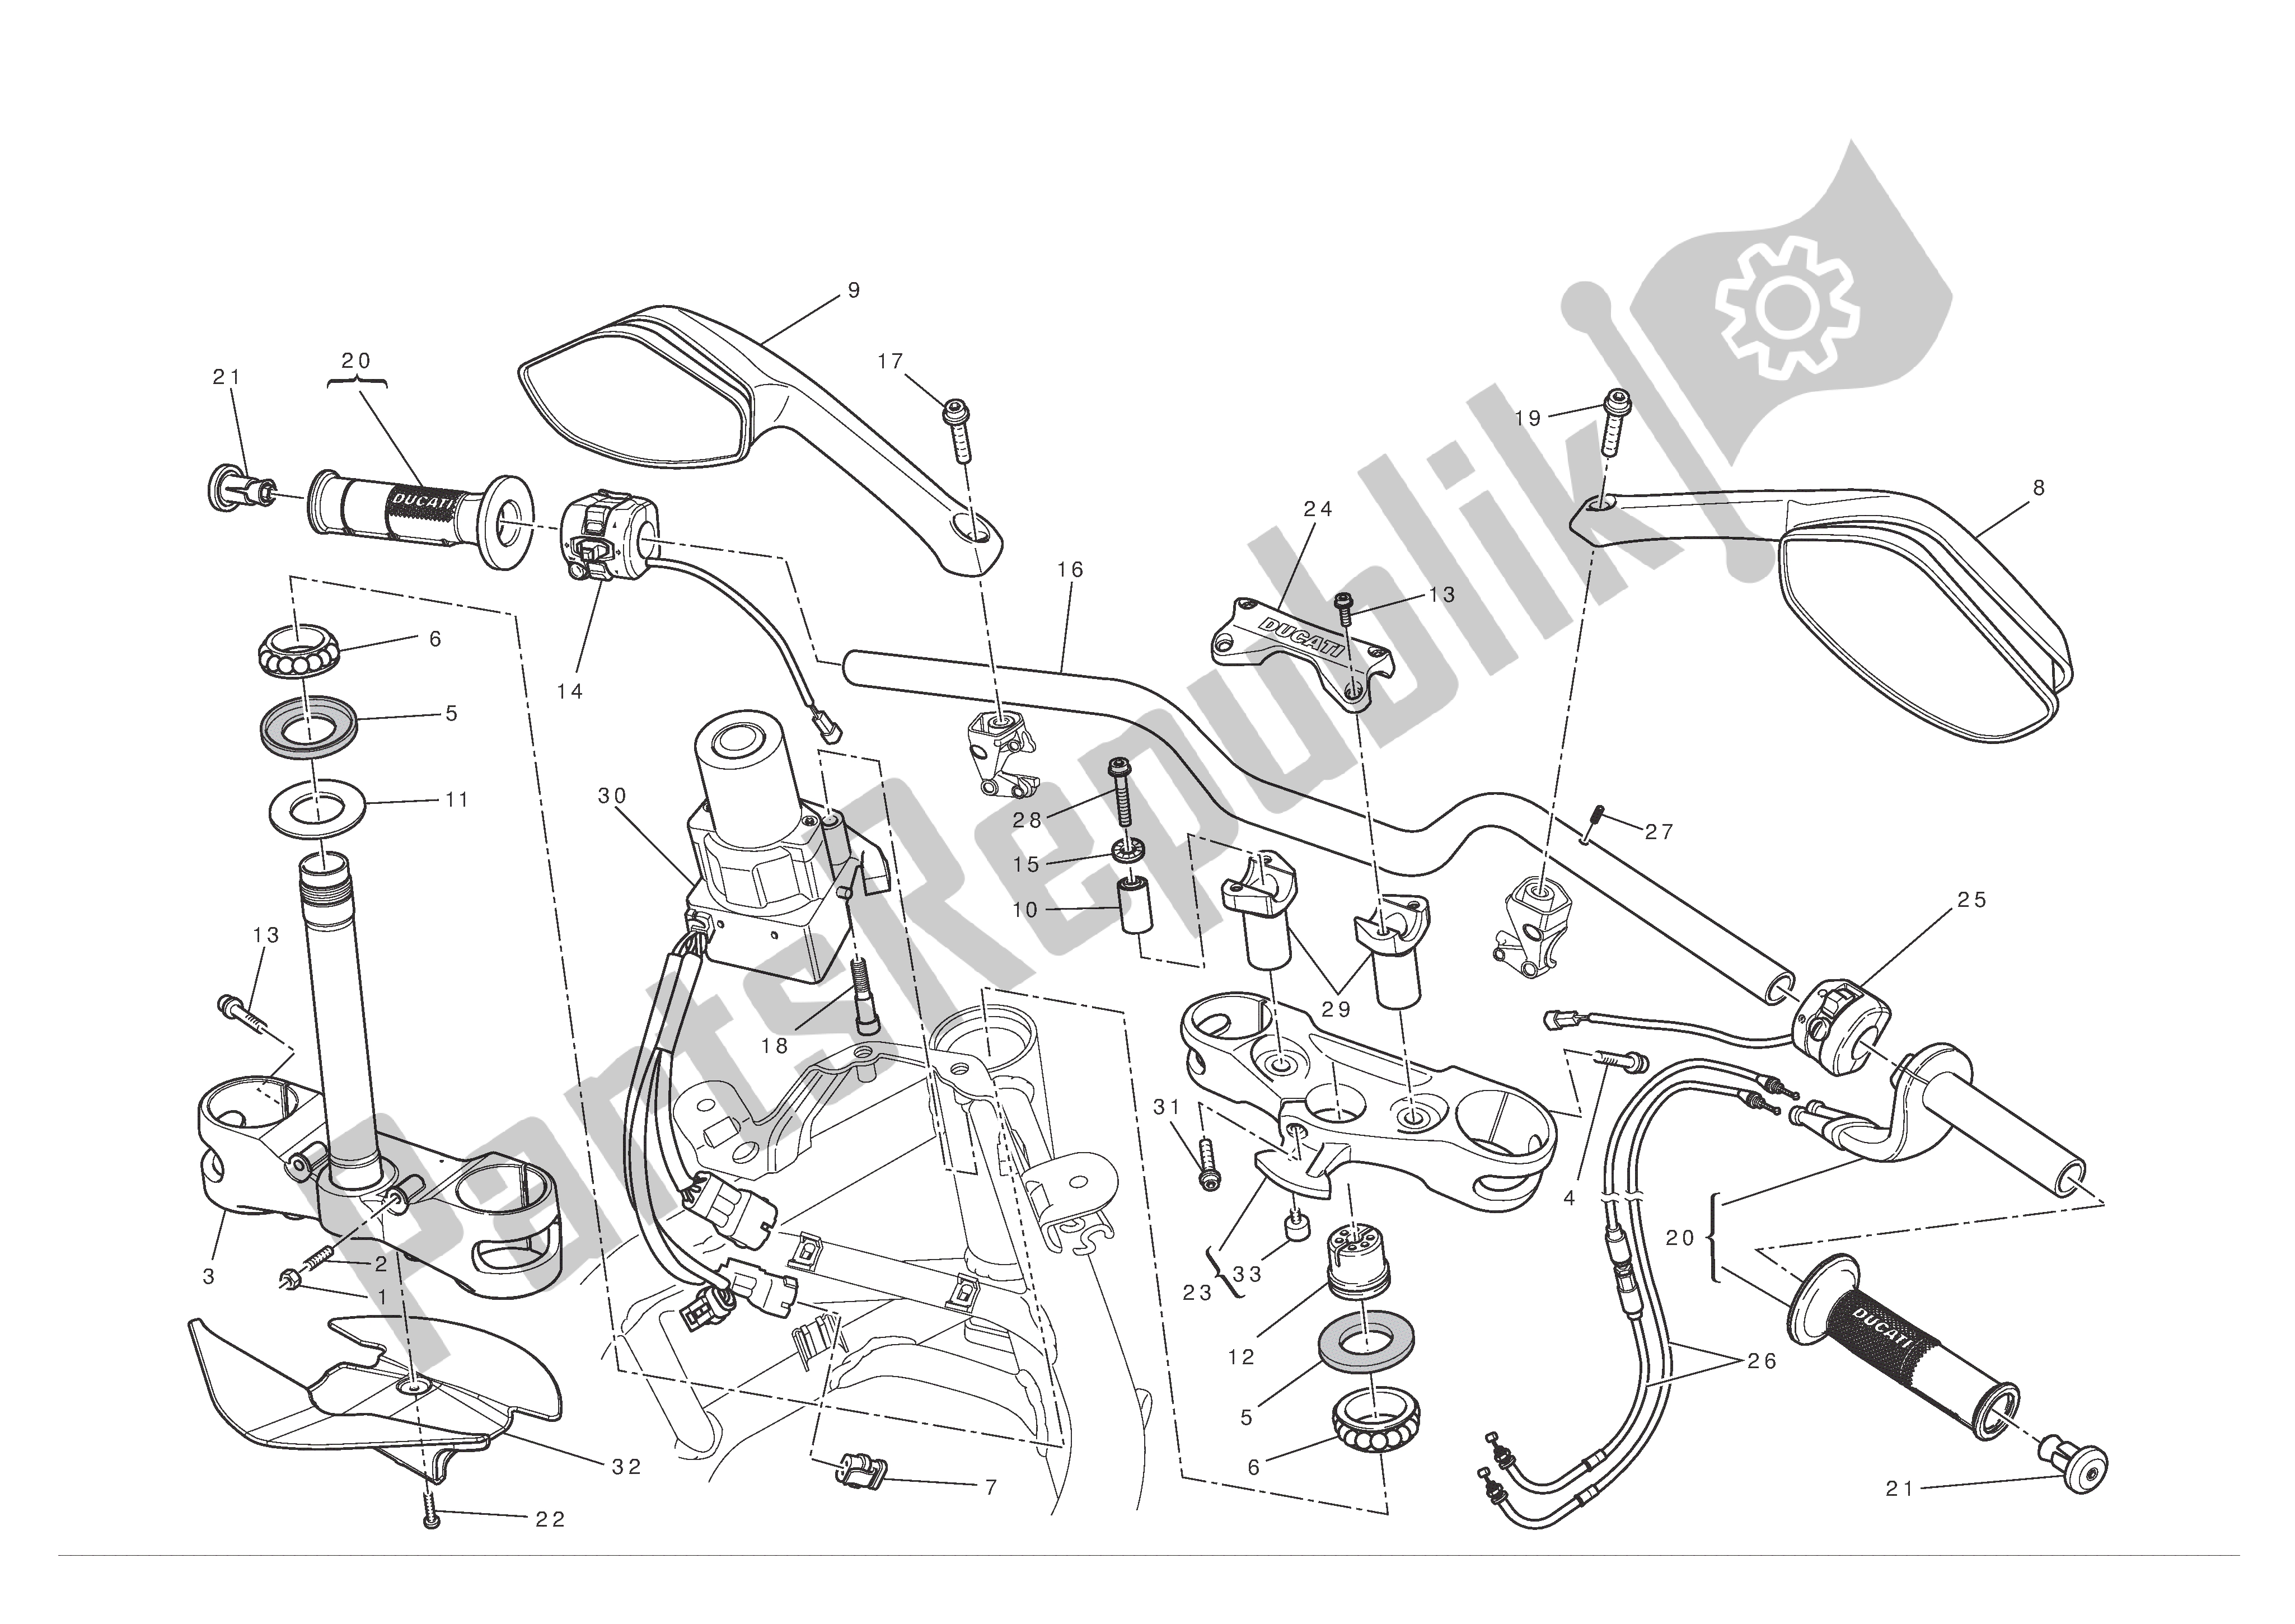 Todas las partes para Manillar Y Controles de Ducati Multistrada S ABS Pikes Peak 1200 2012